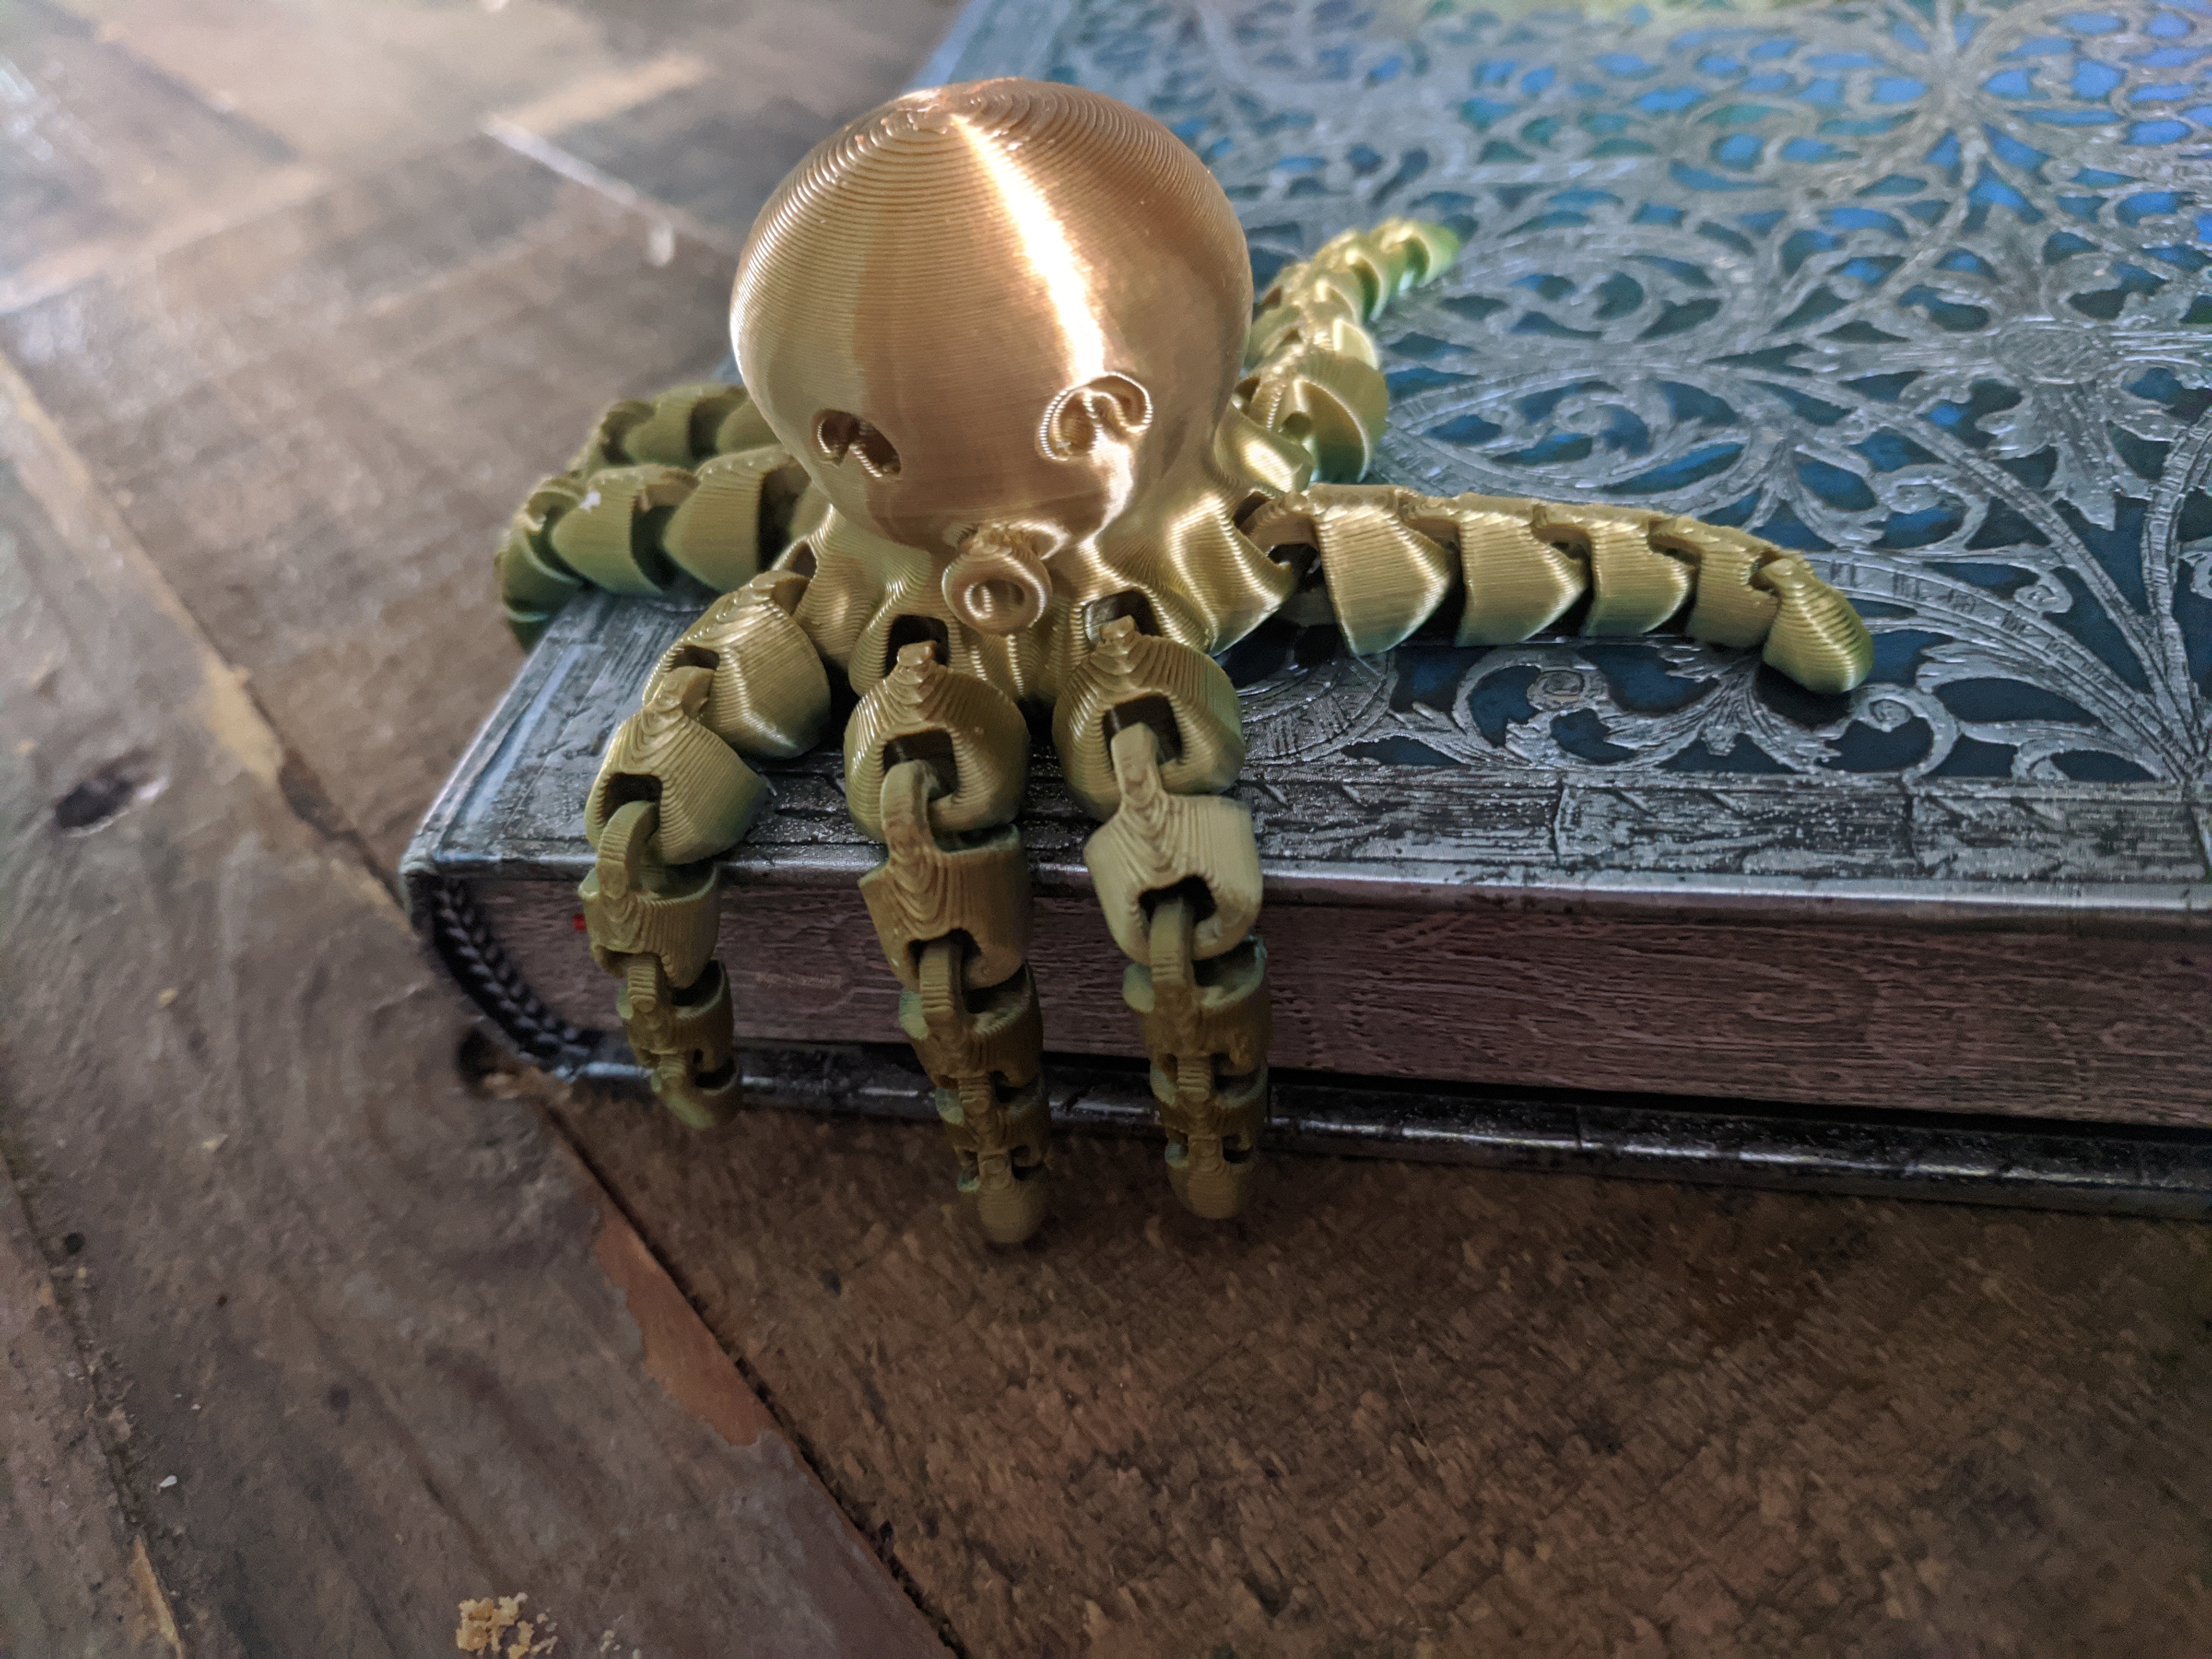 3D Cute Octopus by McGybeer